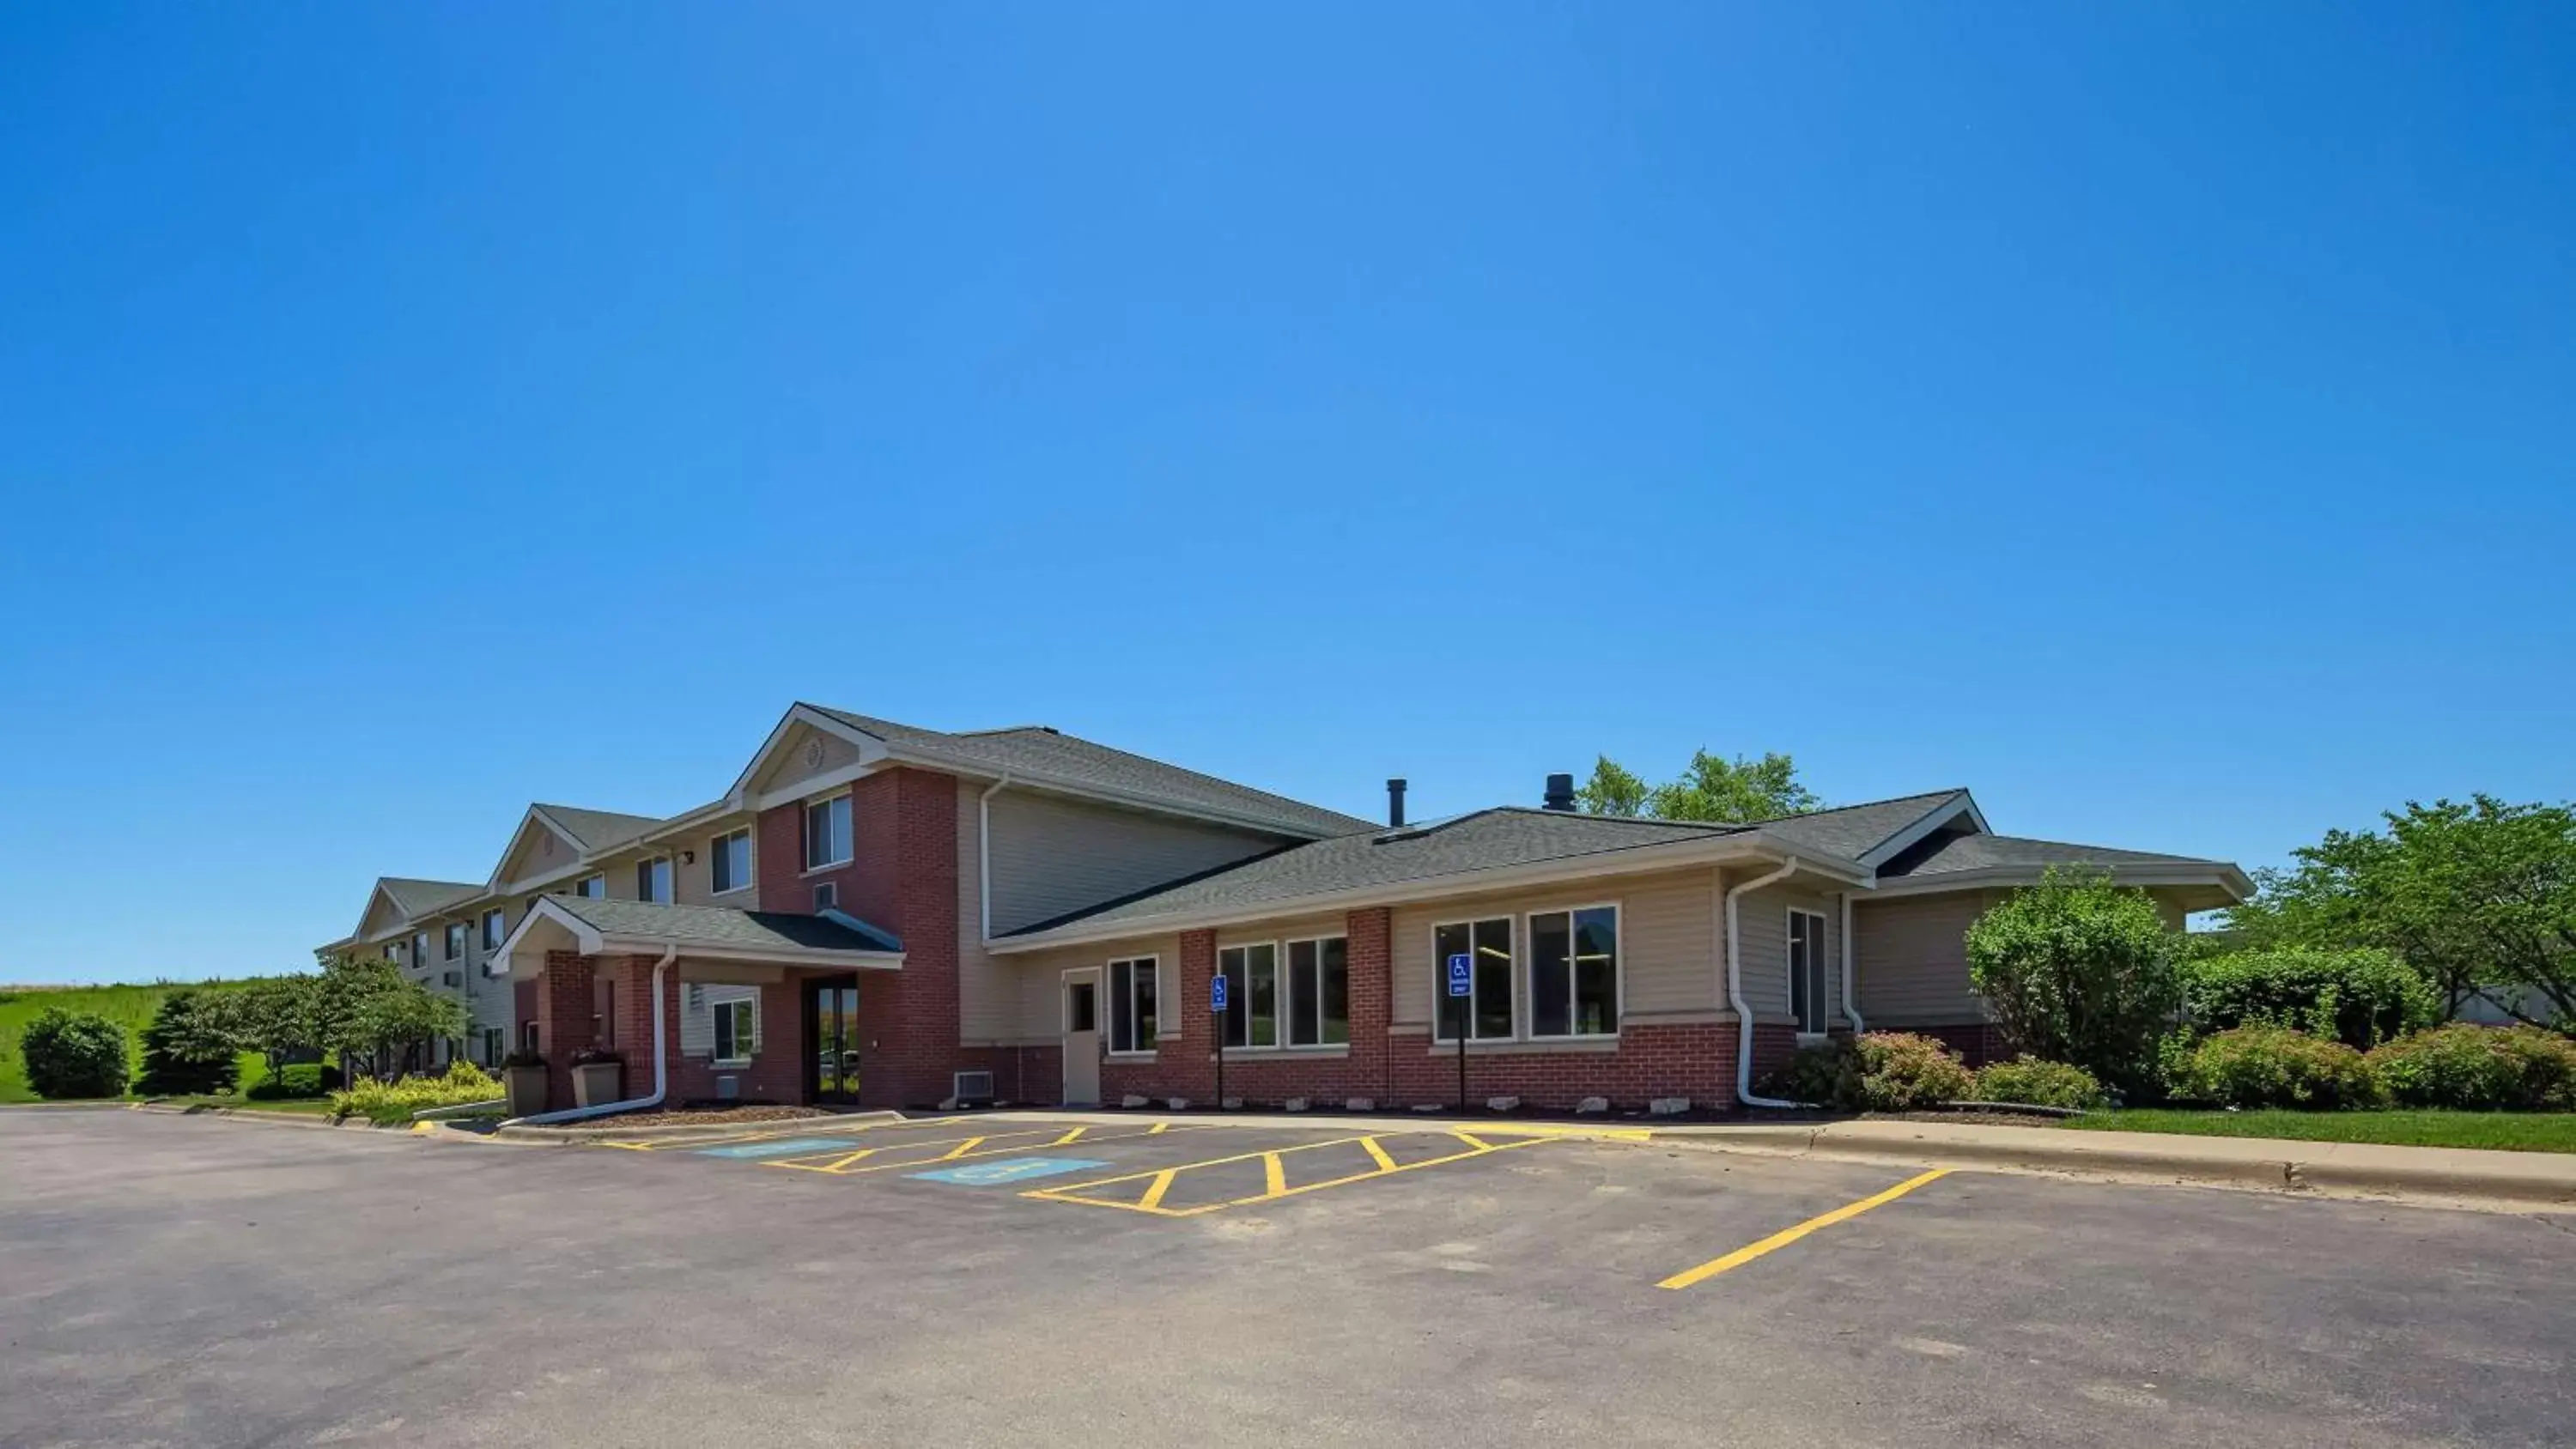 Property Building in Best Western Nebraska City Inn